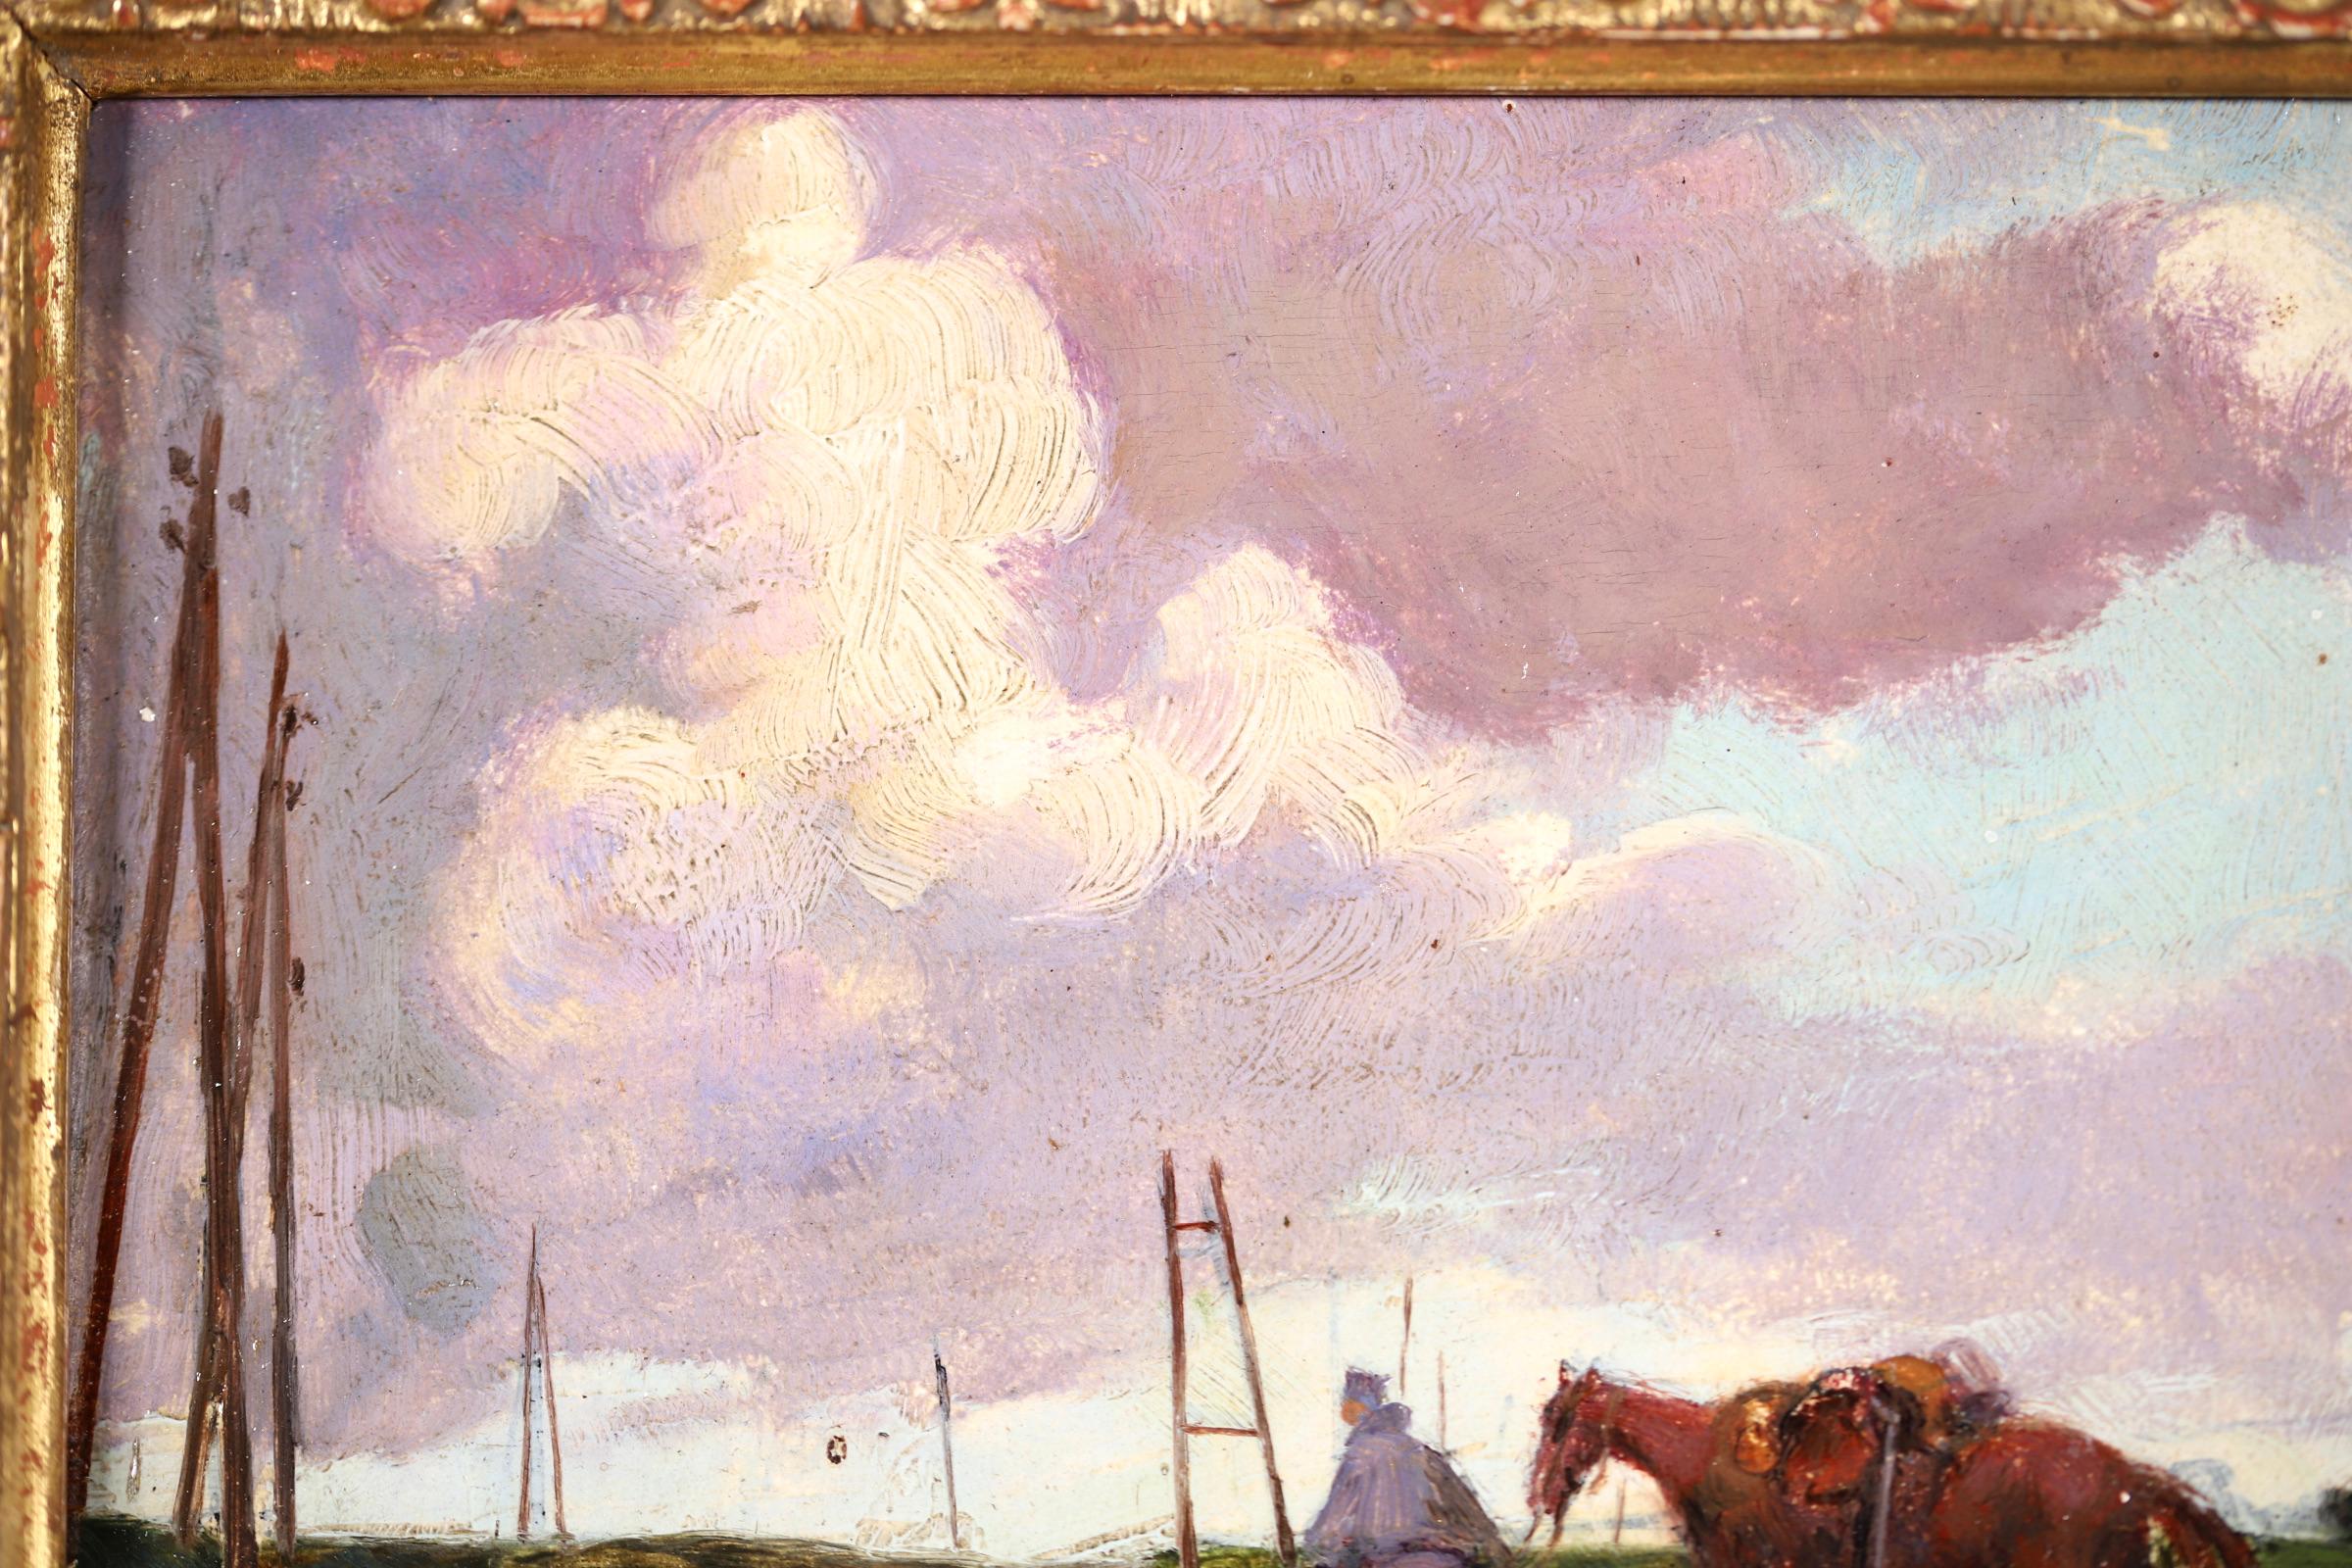 Wunderschönes Öl auf Tafel um 1920 von dem französischen impressionistischen Maler Andre Devambez. Das Werk zeigt einen Soldaten, der sein Pferd während des Ersten Weltkriegs über einen Feldweg führt. Ein einfaches, aber ergreifendes Stück und schön